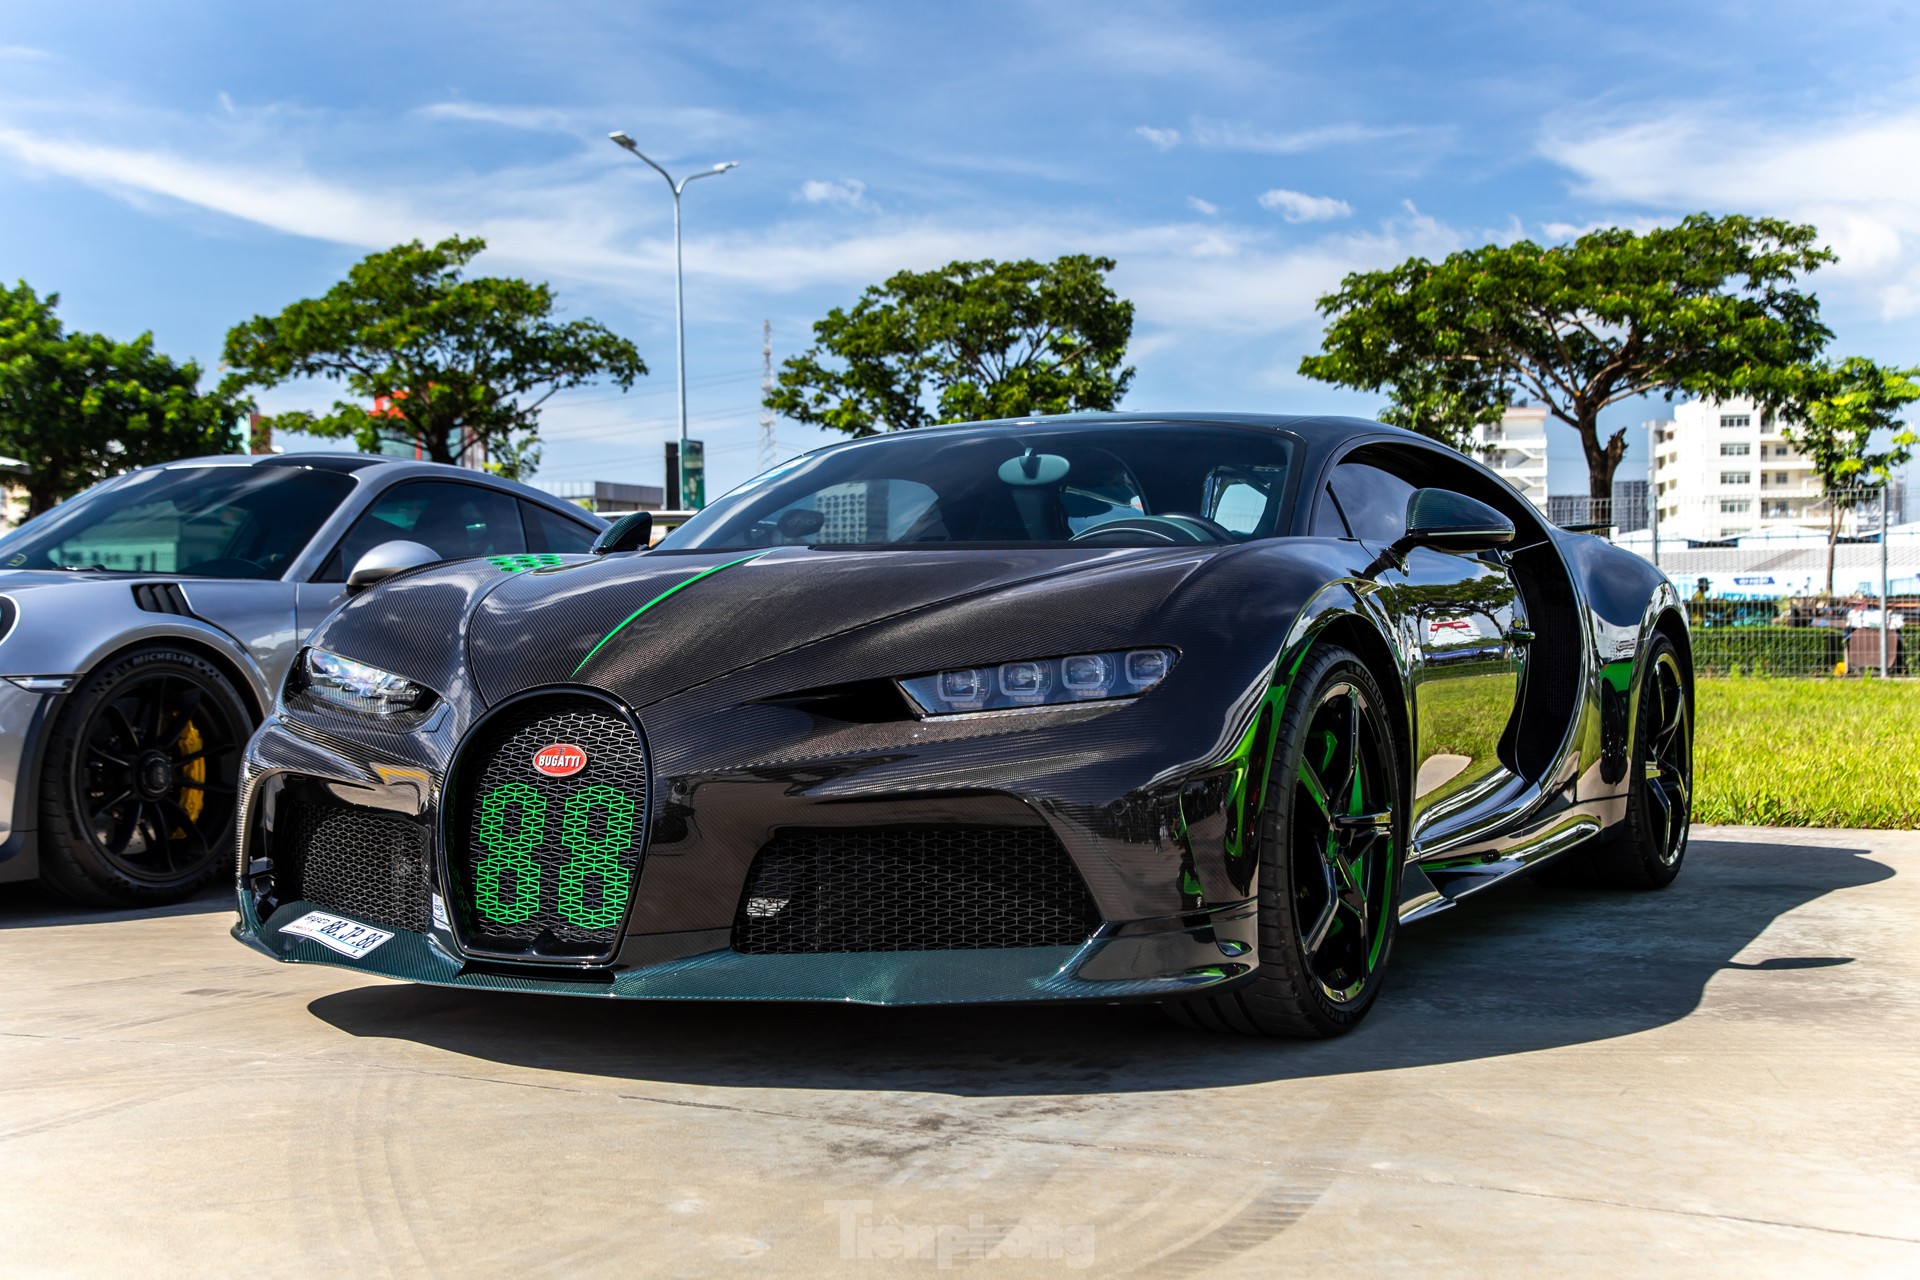 'Siêu phẩm' Bugatti Chiron Super Sport trị giá 10 triệu USD tại Campuchia